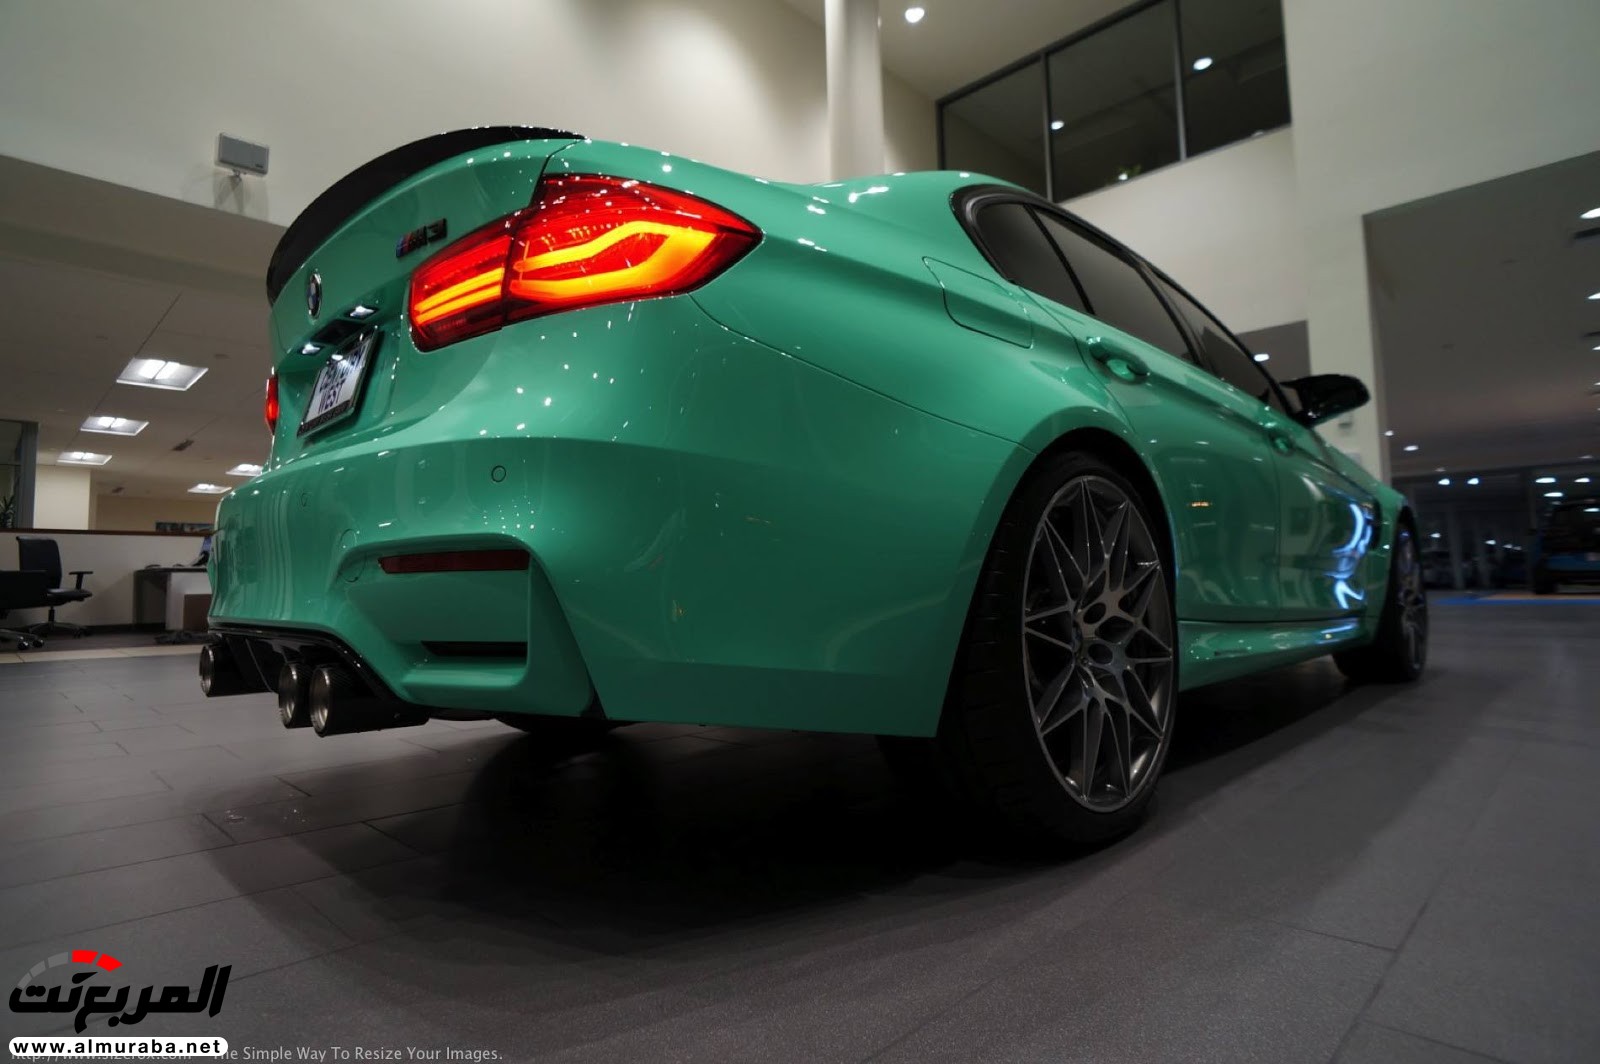 "بالصور" شاهد "بي إم دبليو" F80 M3 الخاصة بطلاء النعناع الأخضر BMW 104